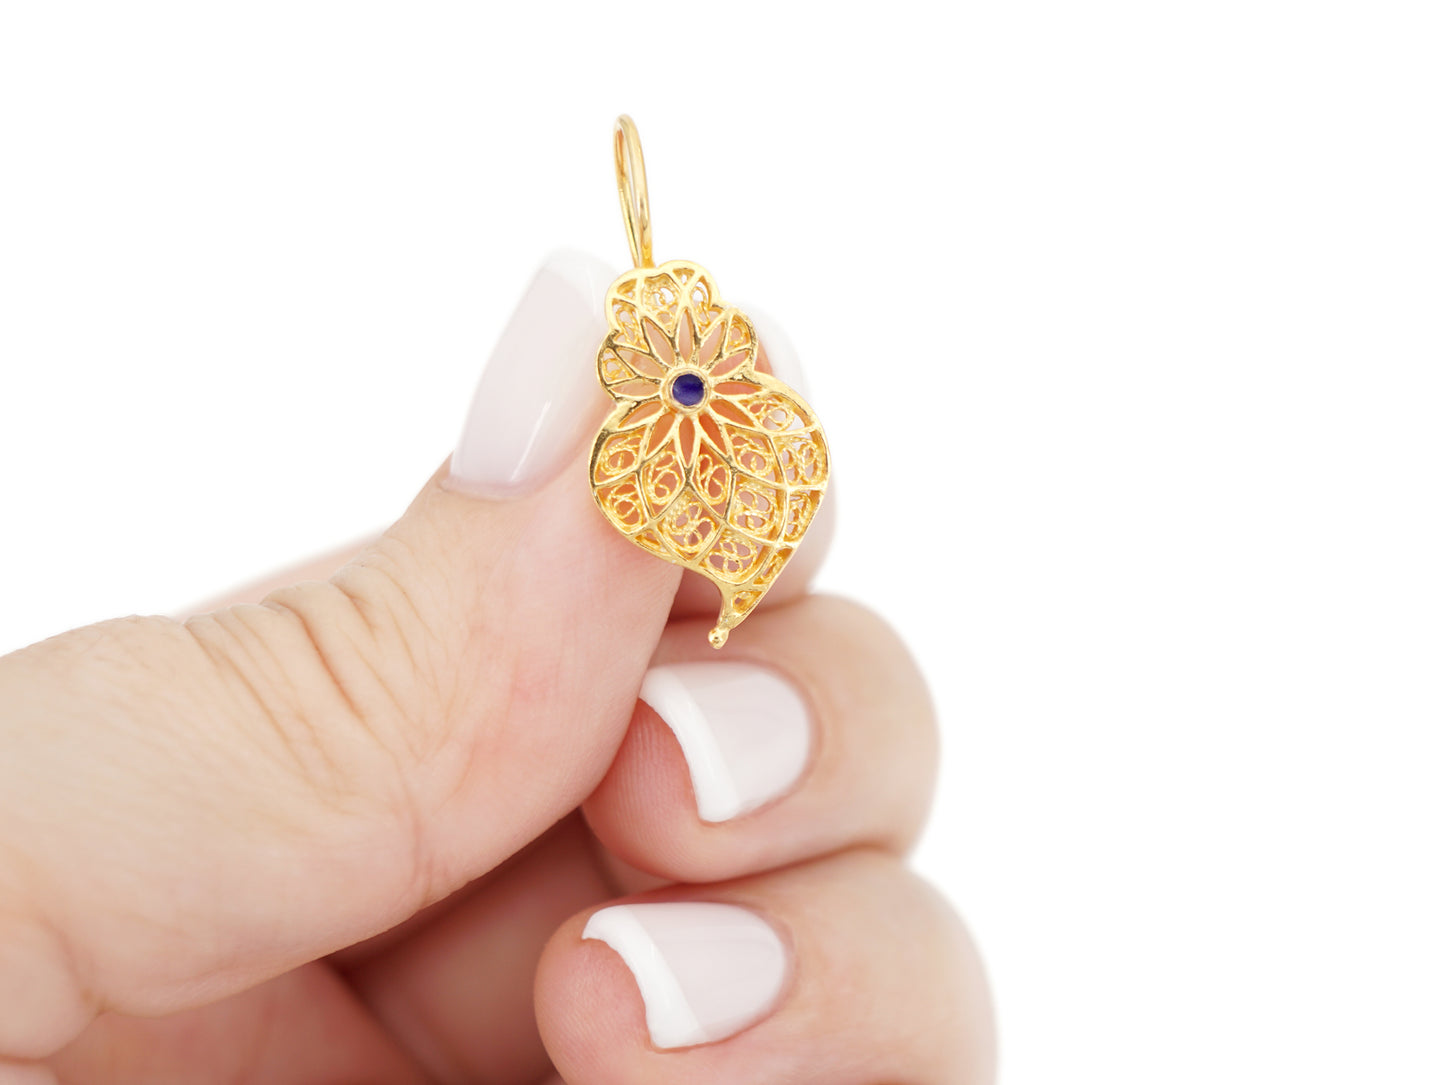 Brincos Coração Pequeno com Esmalte, Filigrana Portuguesa, Prata de Lei 925 Dourada - Pormenor na mão